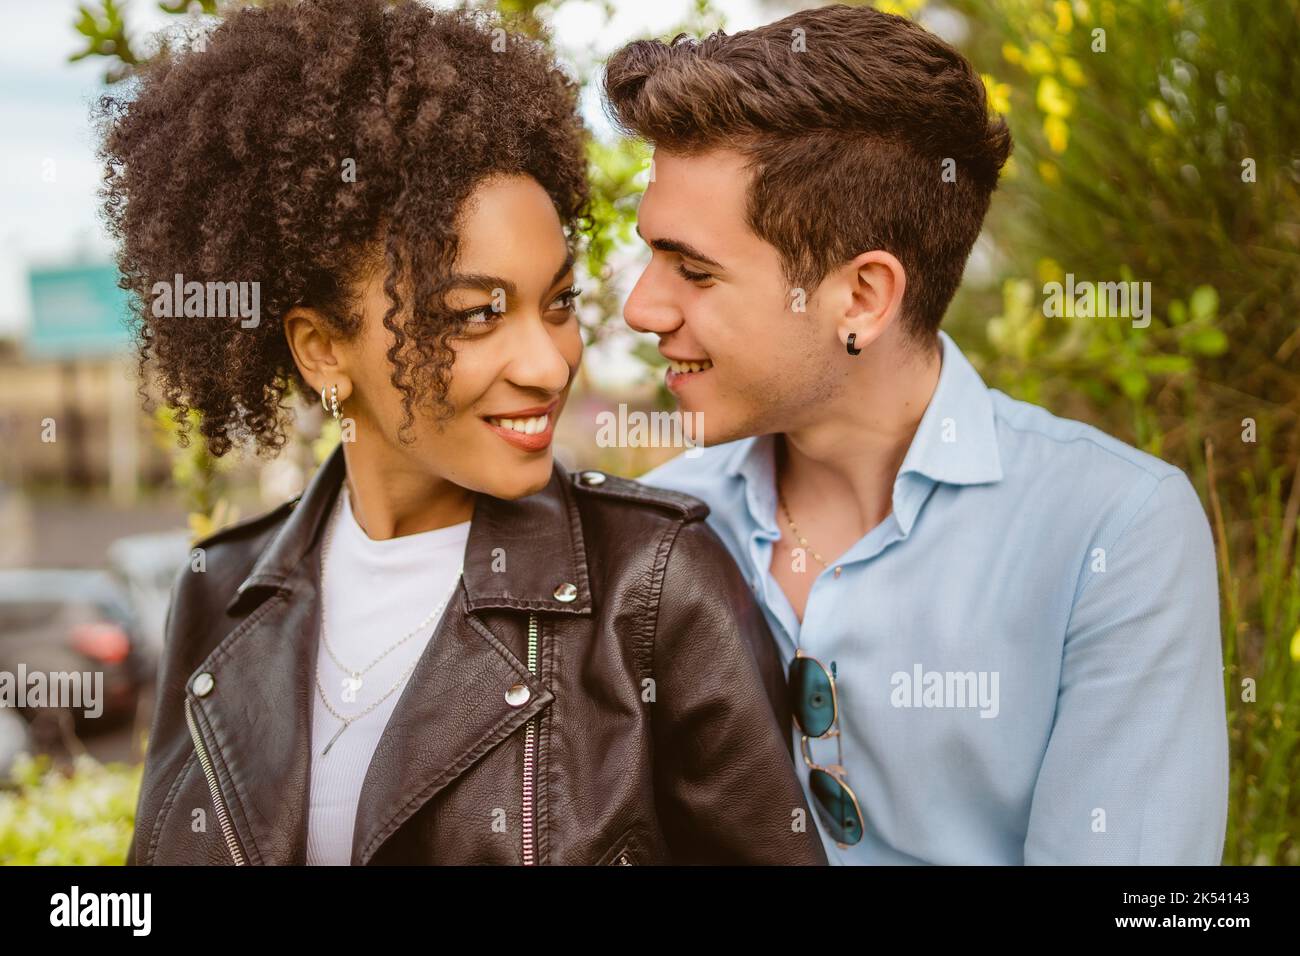 Multiethnisches Paar, mit afroamerikanischer Frau und kaukasischem Mann, die einander in die Augen schauen - romantische Menschen und diversisterer Lebensstil concep Stockfoto